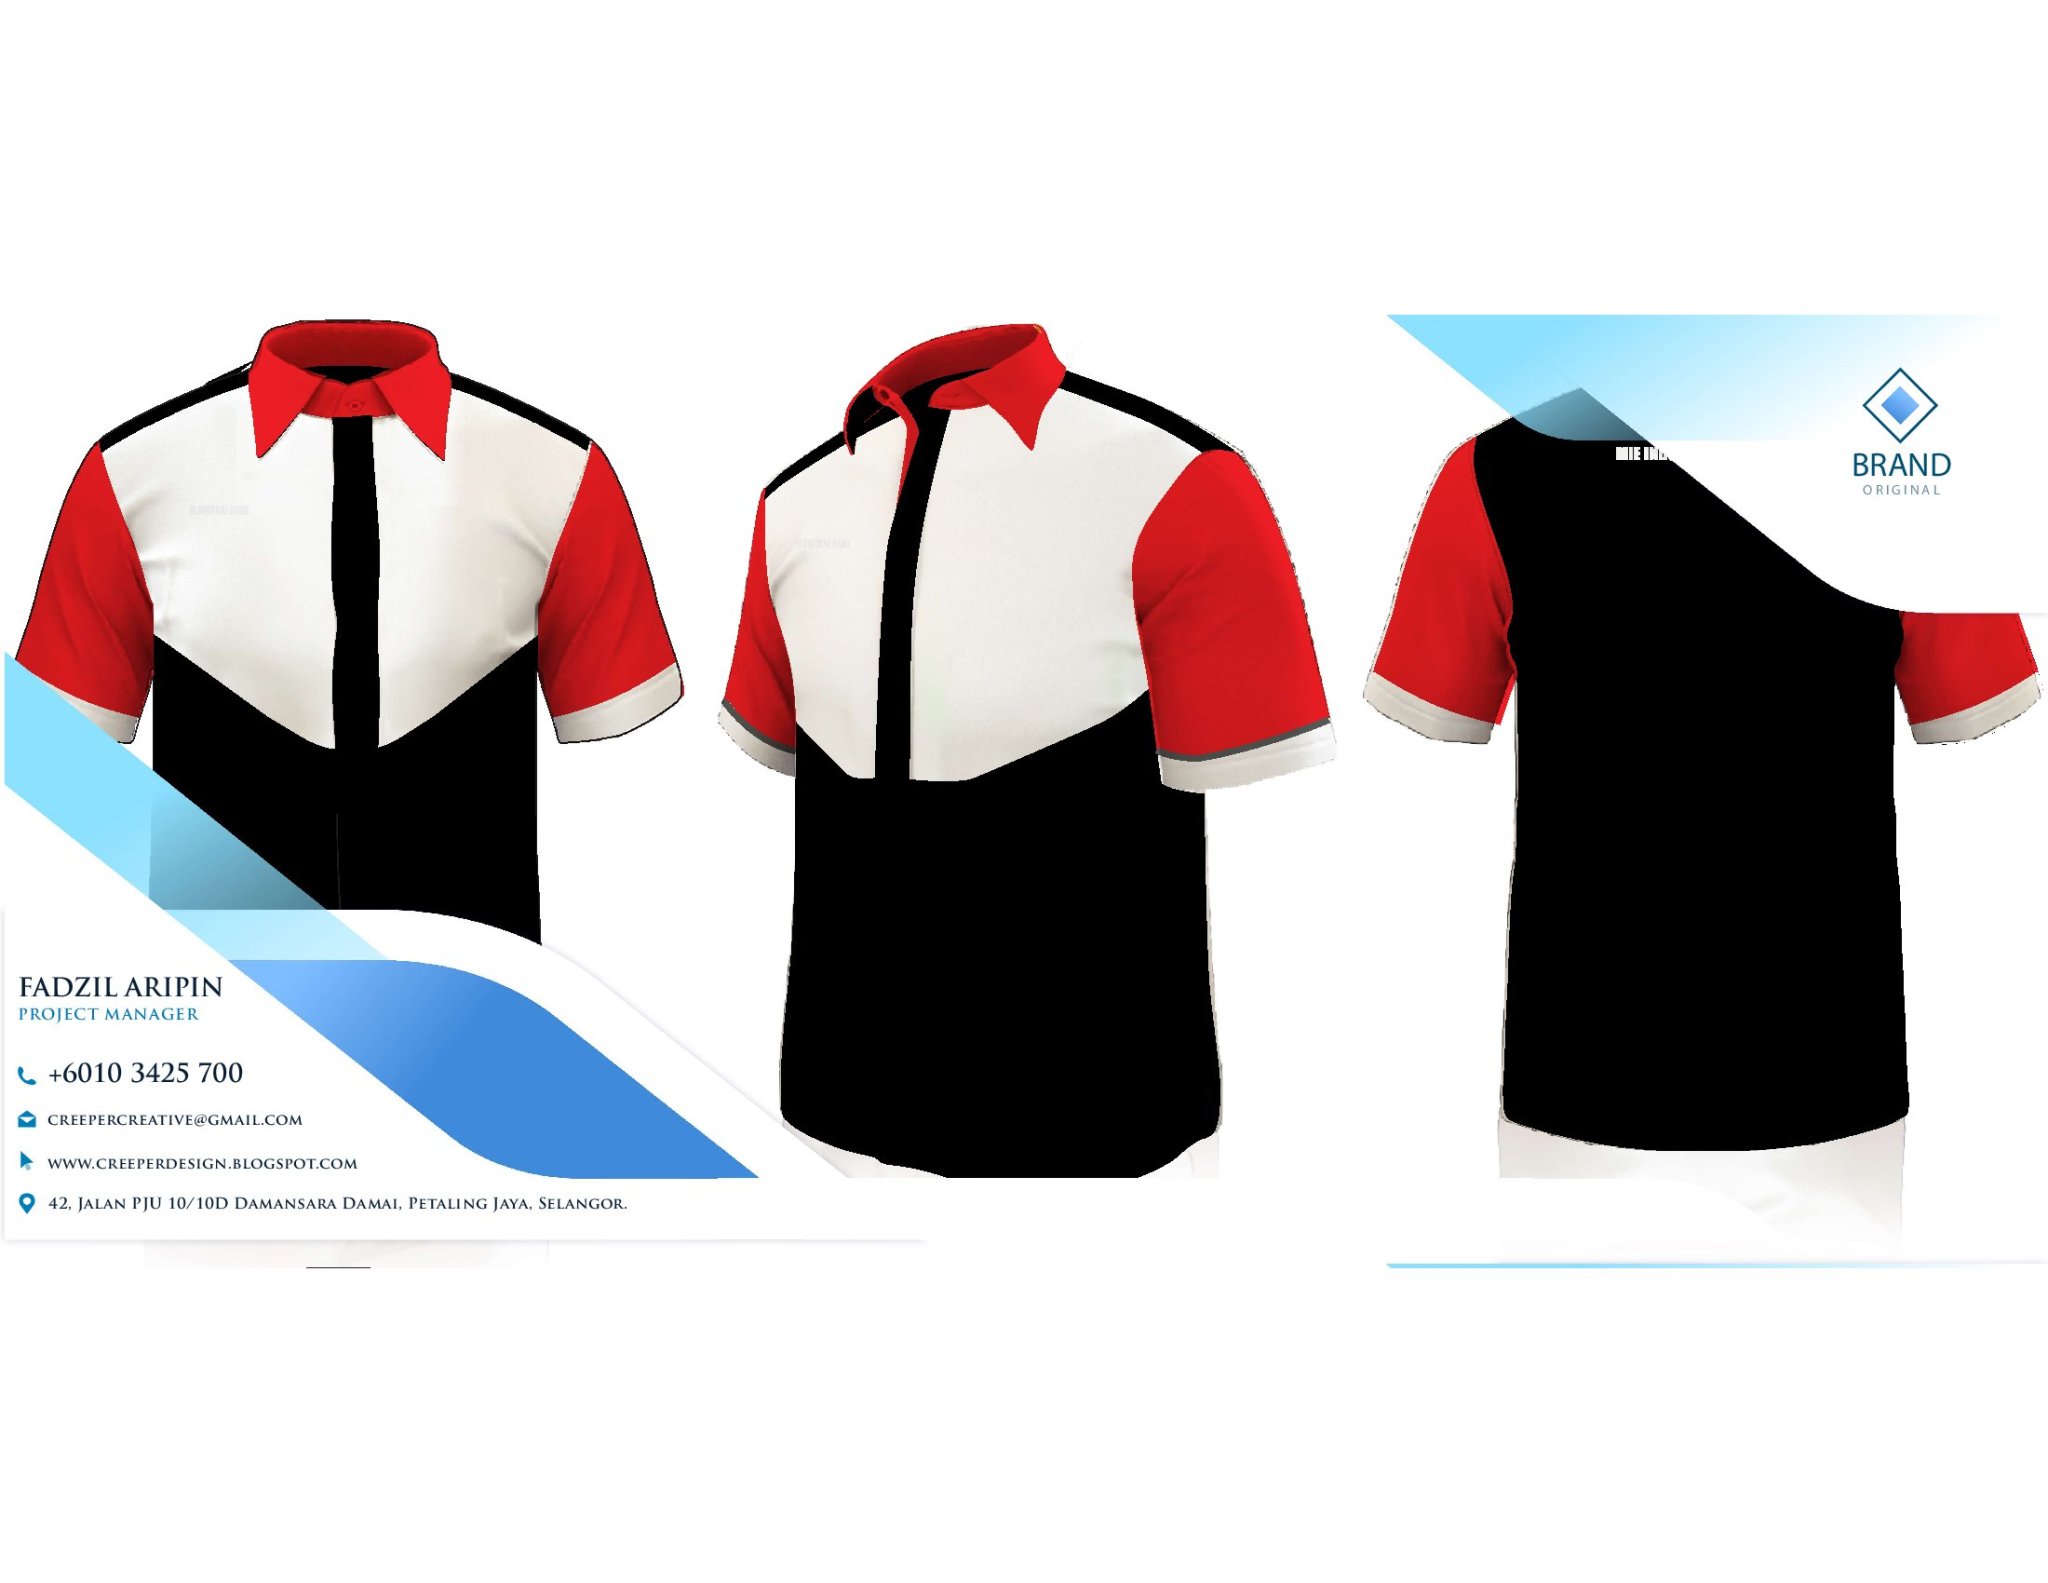 Corporate T Shirt Design : WhatsApp Us 0103425700